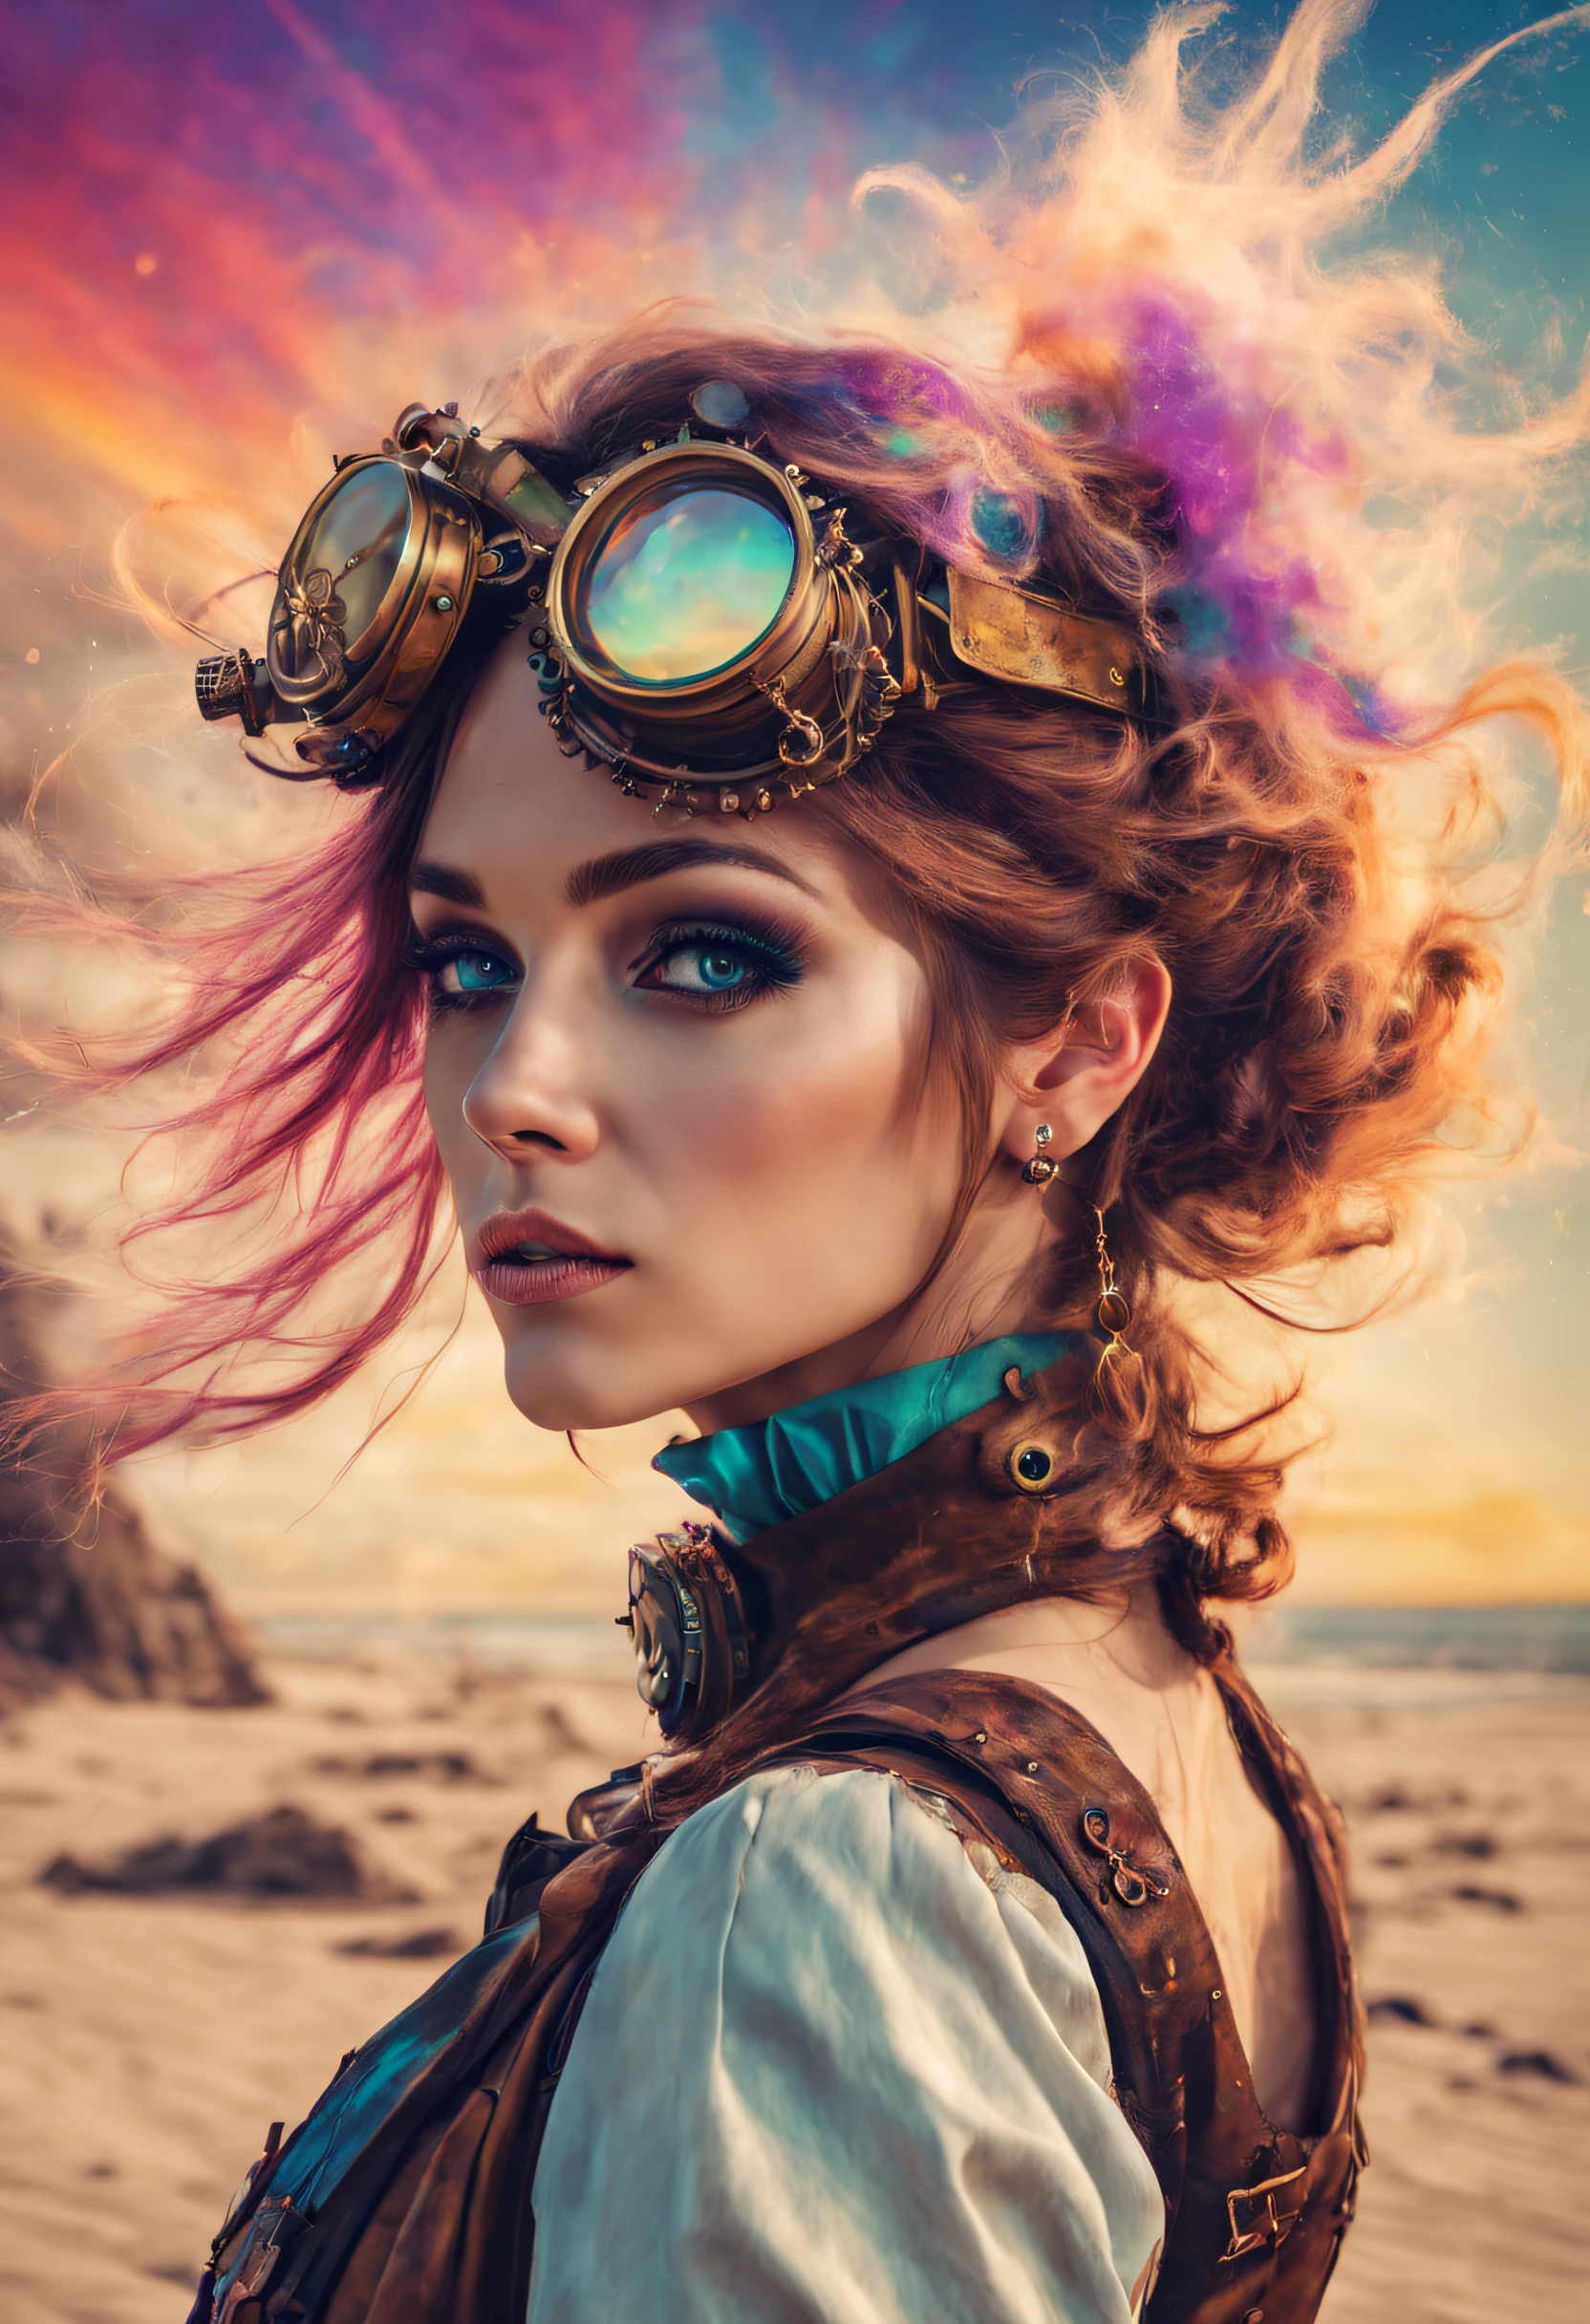 Um lindo retrato de mulheres steampunk e psicodélicas com lindas cores e no fundo explosões de areia de cores misturadas